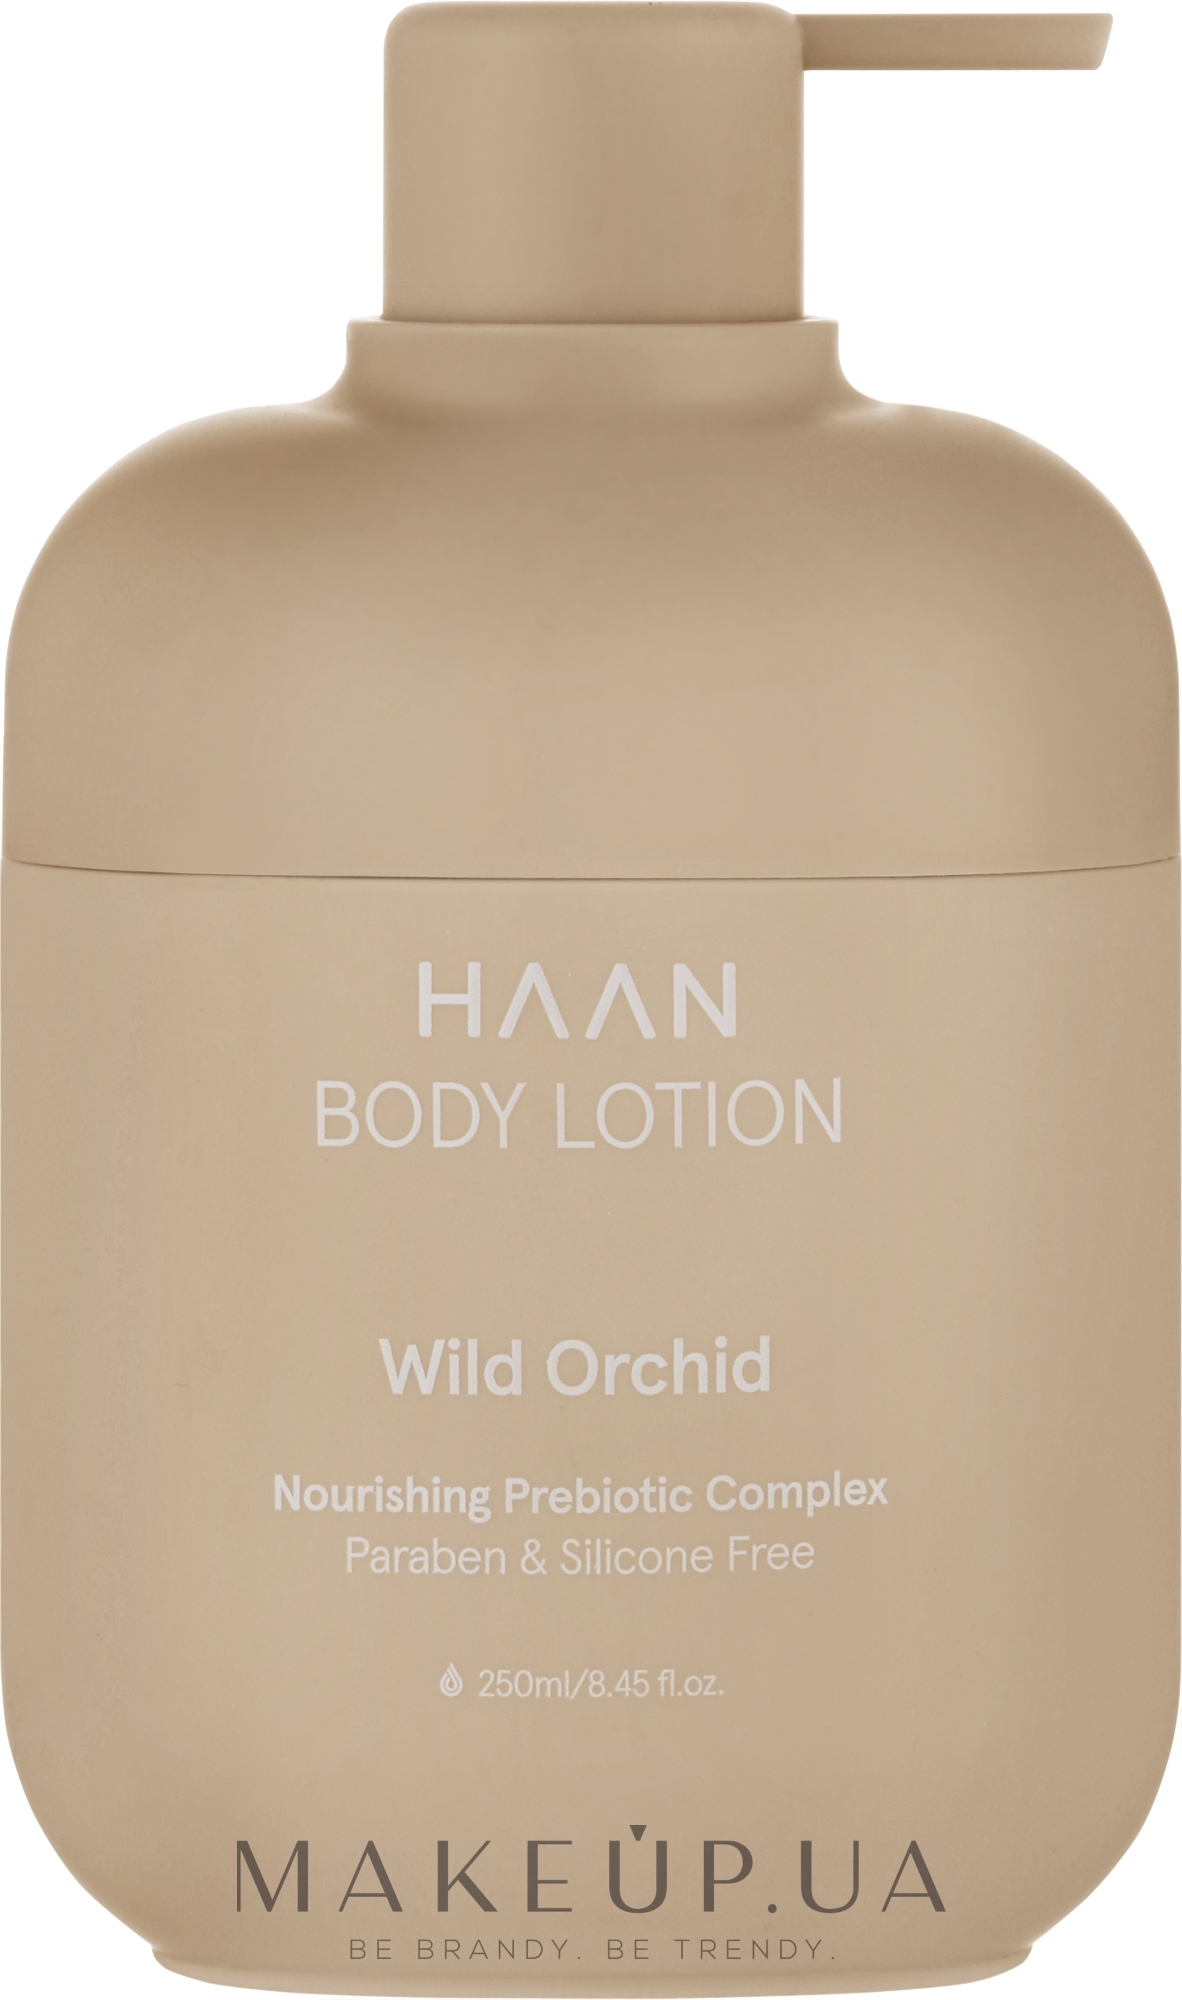 Питательный лосьон для тела - HAAN Wild Orchid Body Lotion — фото 250ml